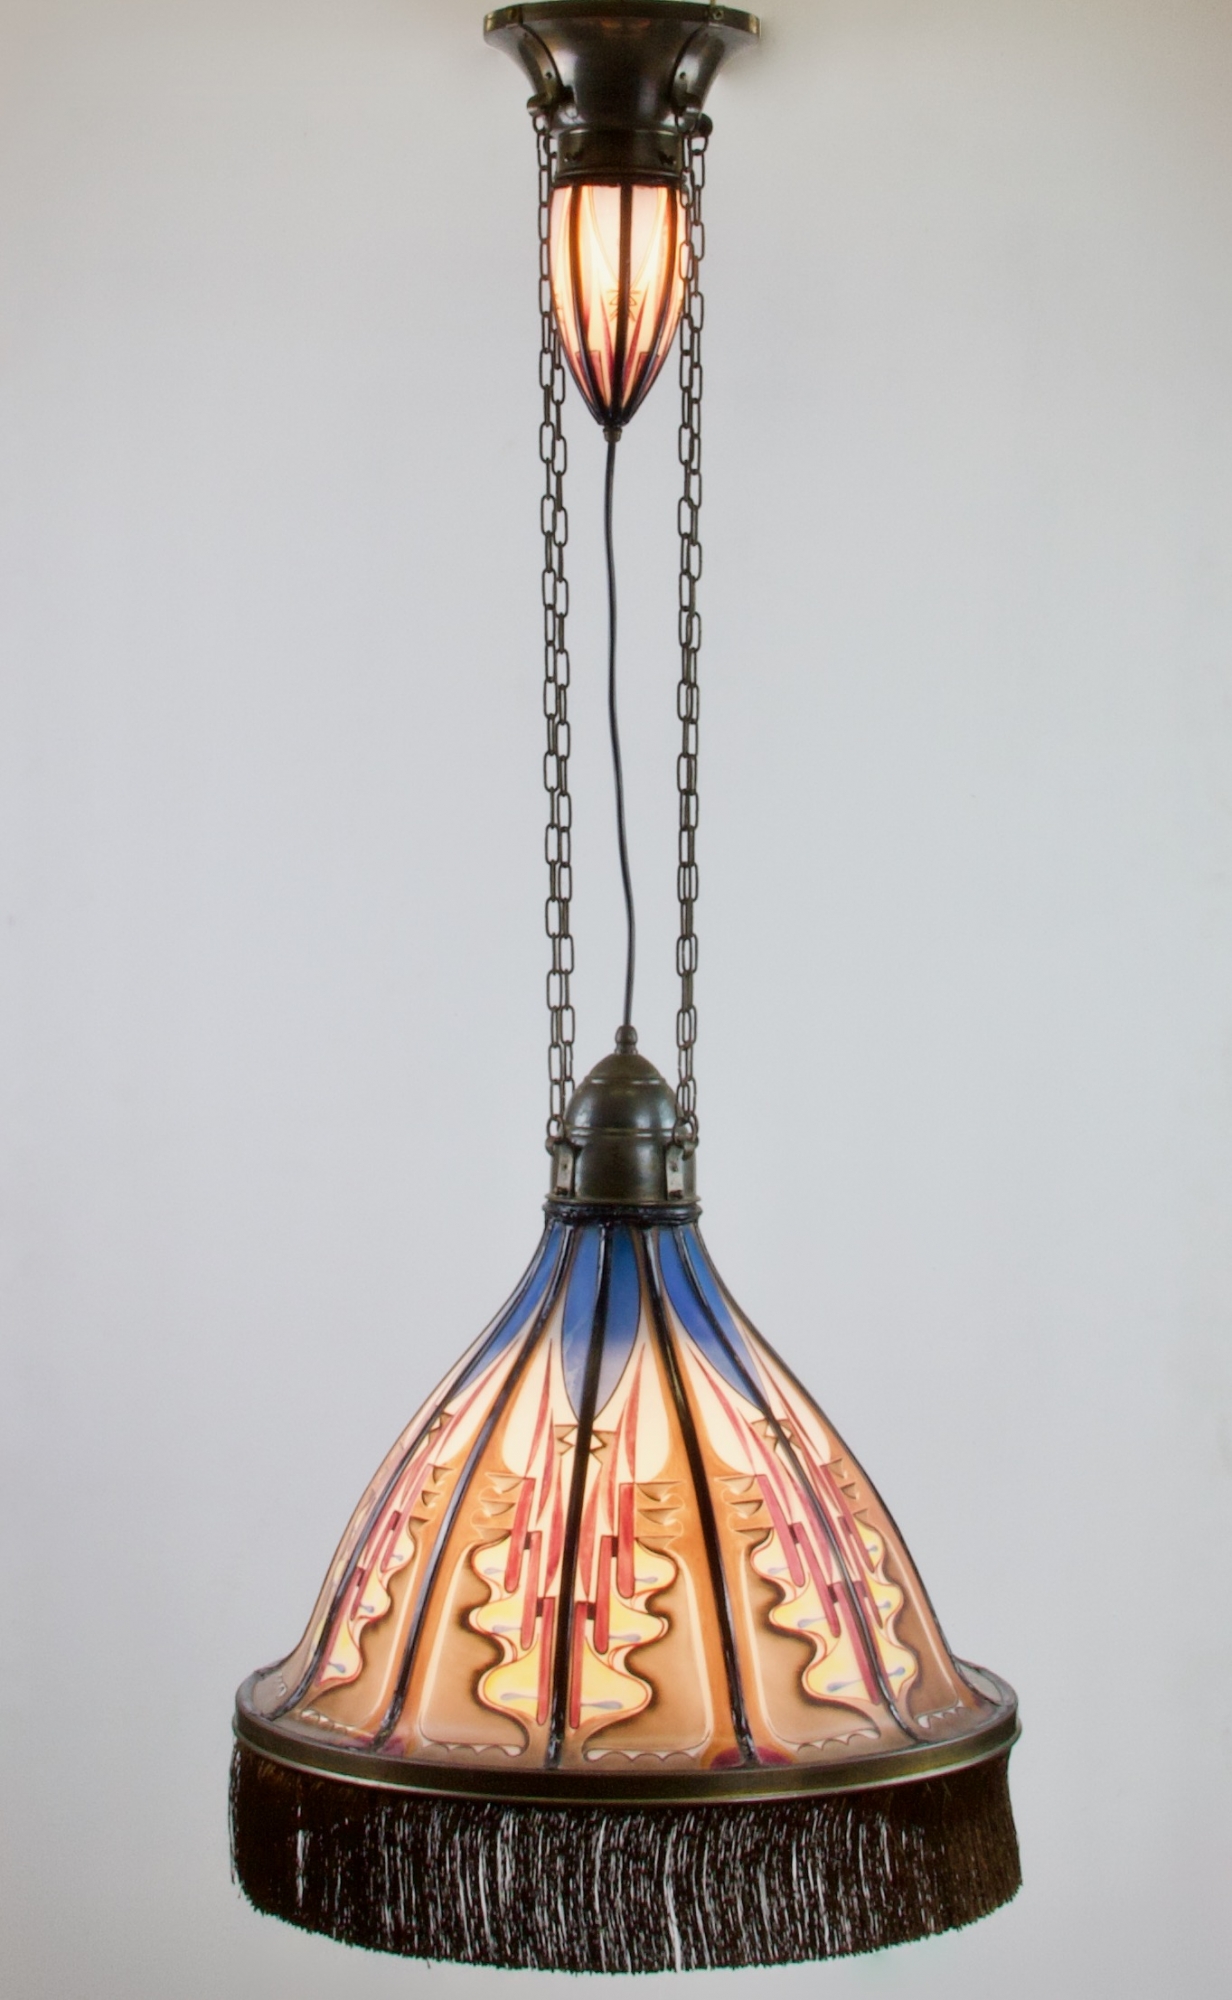 Keelholte regiment ontvangen De Nieuwe Honsel, Amsterdamse School hanglamp met toplicht, model D218,  jaren 20 - De Nieuwe Honsel | Kunstconsult